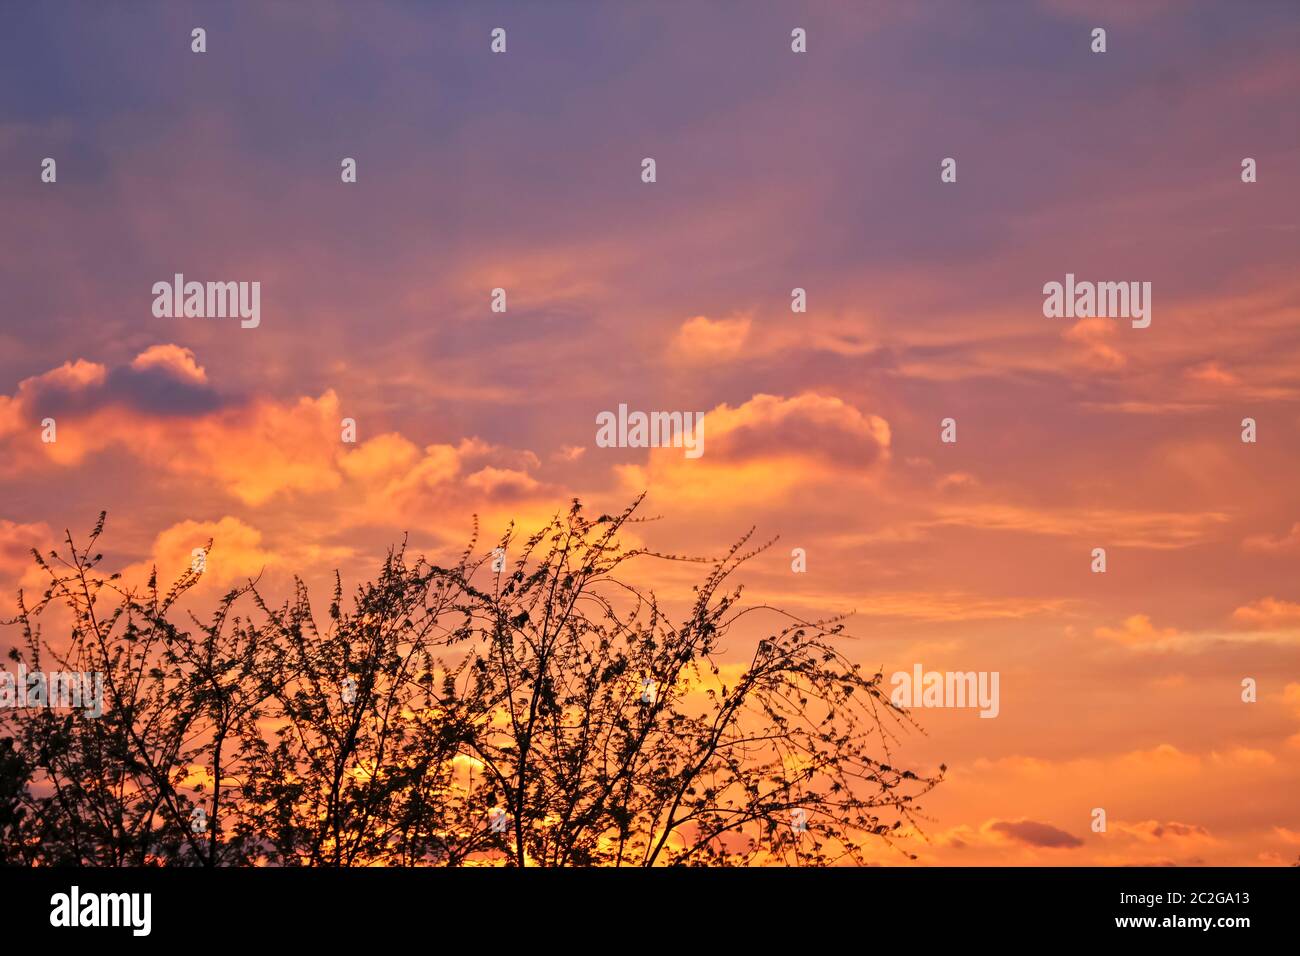 Unglaublich schöne Wolkenformationen und Farben in den Himmel, Sonnenuntergang hinter Bäumen. Stockfoto